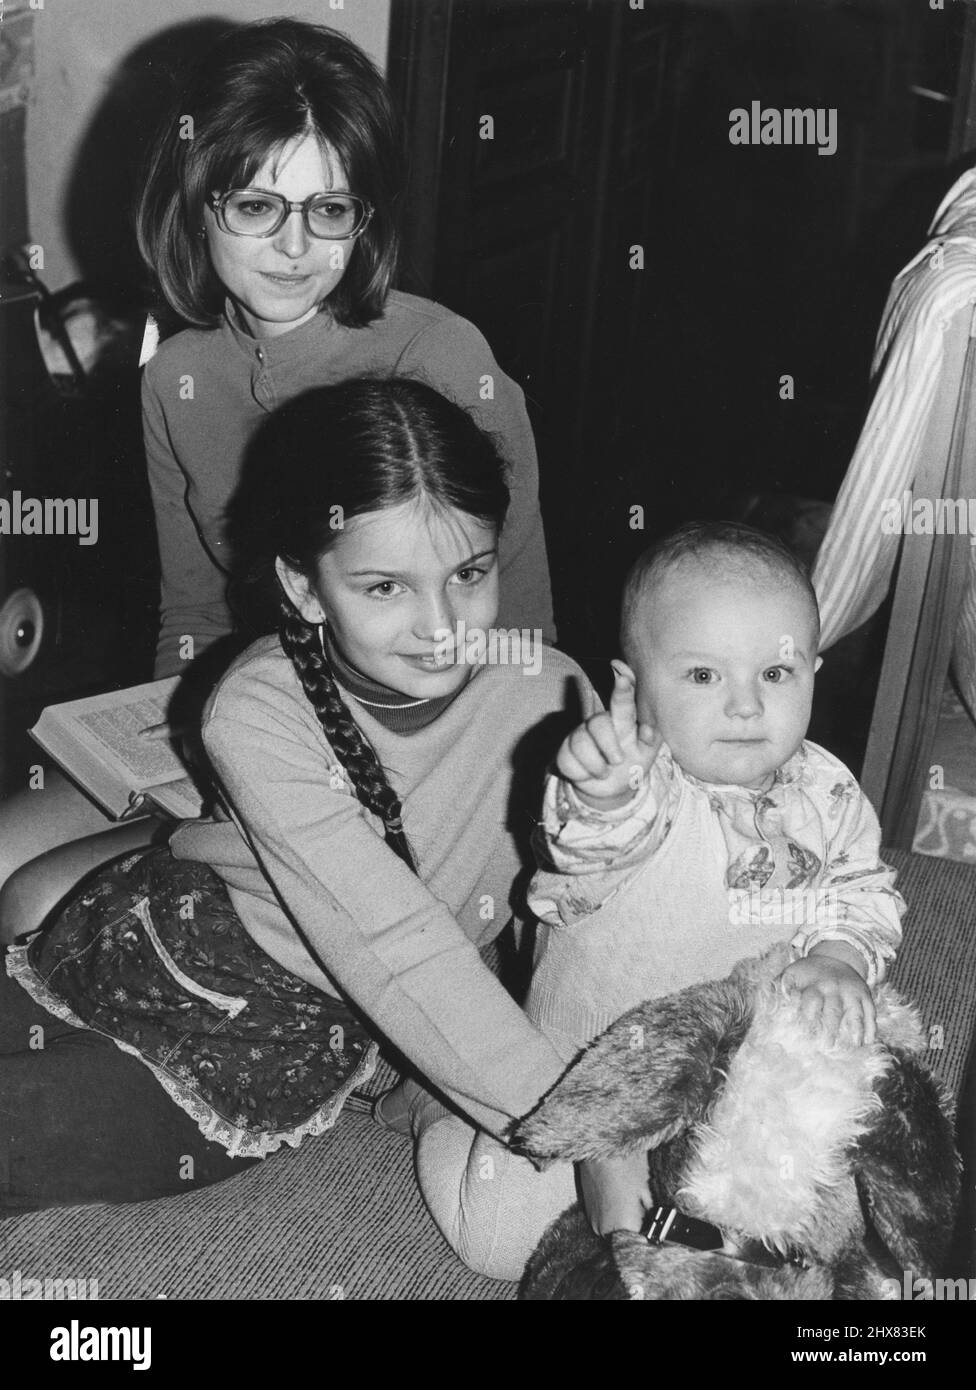 ARCHIVIO 1973Model Paulina Porizkova da bambino con sua madre Anna e fratello Joachym. La famiglia di Paulina fuggì in Svezia dalla Cecoslovacchia dopo l'invasione sovietica nel 1968, senza Paulina che era stata arrestata dalle autorità cecoslovacche. Dopo una lunga lotta da parte dei genitori, Paulina fu rilasciata nei primi anni '70 in Svezia dove fu riunita con la sua famiglia. Come 15 anni nel 1980, si trasferì negli Stati Uniti e divenne un modello. Foto: Scandia Photopress / TT / Codice: 680 Foto Stock